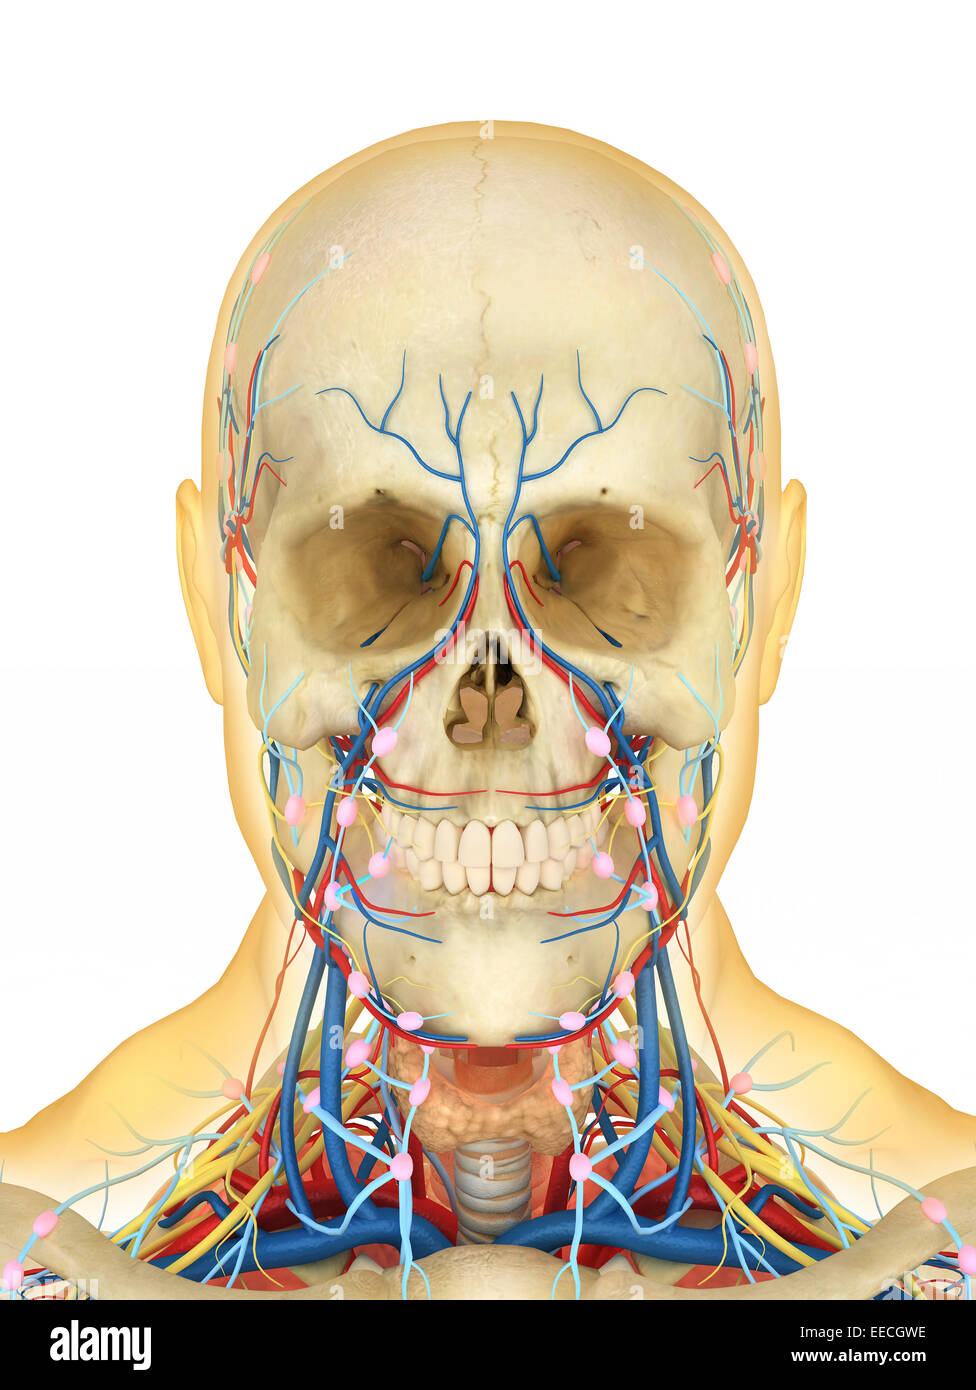 Menschlichen Gesicht und Hals-Bereich mit internen Kehle Teile, Nervensystem, Lymphsystem und Herz-Kreislauf-System. Stockfoto